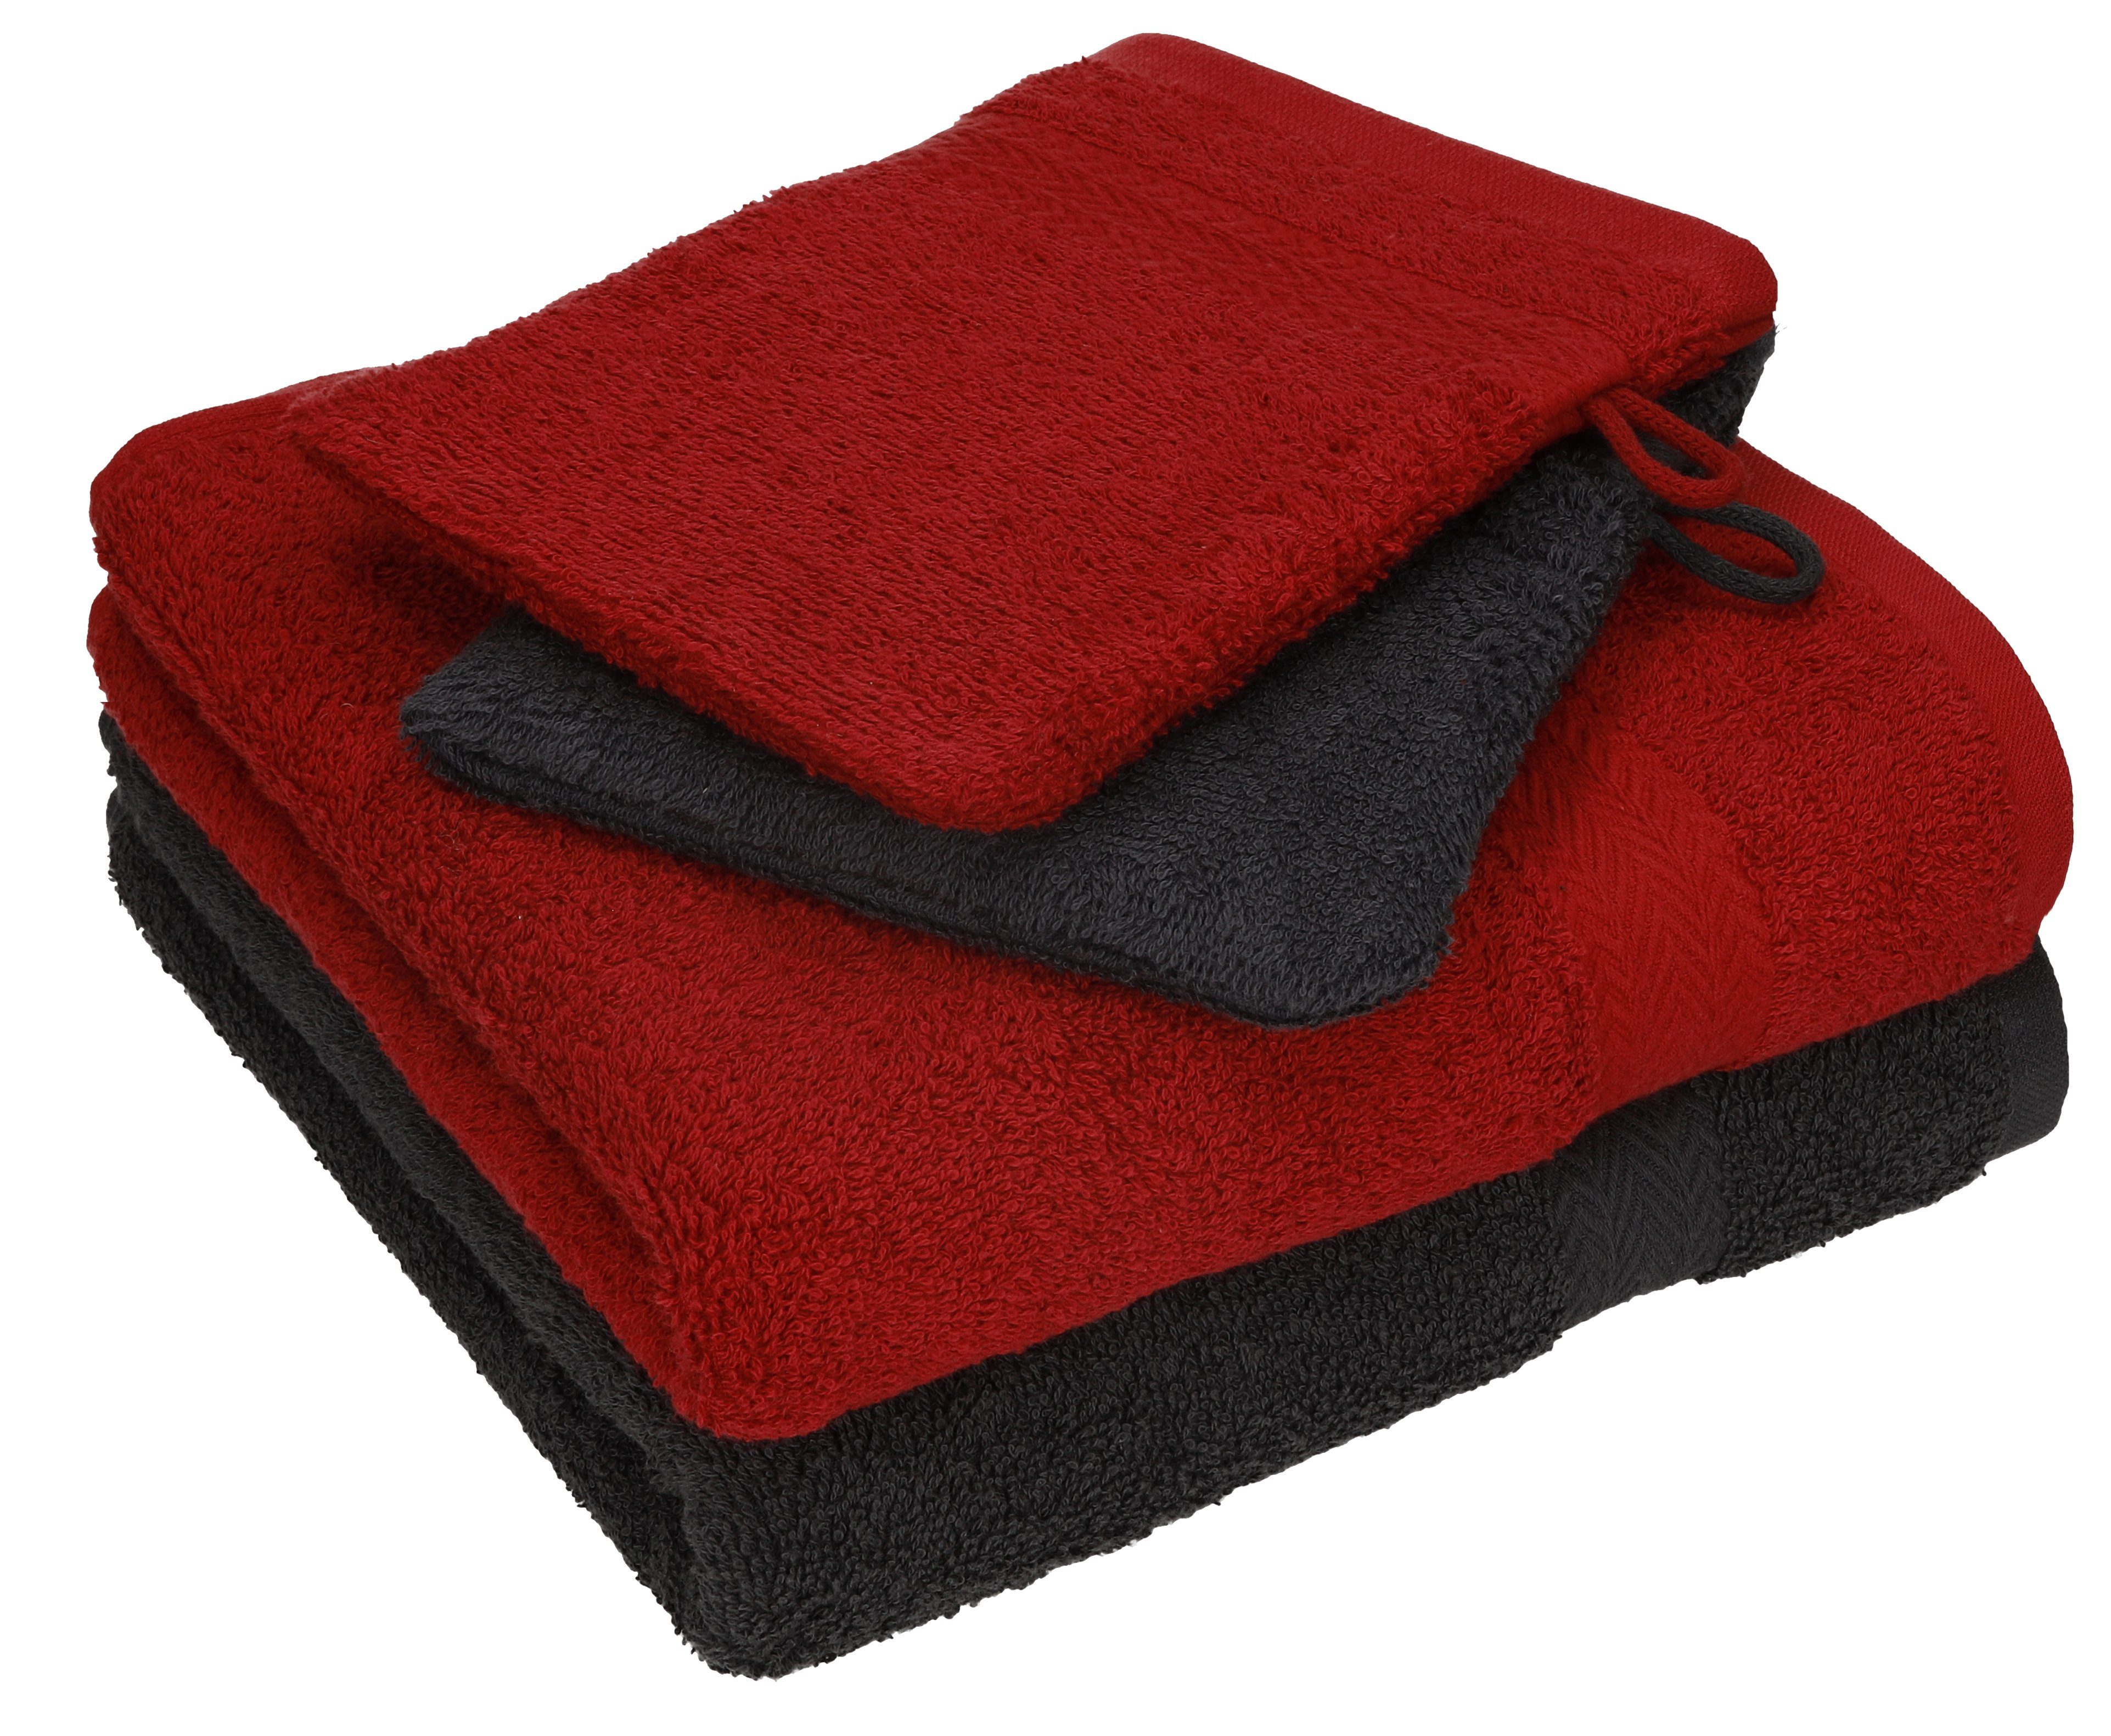 Betz Handtuch Set 4 tlg. Handtuch Set HAPPY Pack 100% Baumwolle 2 Handtücher 2 Waschhandschuhe, 100% Baumwolle graphit grau - rubinrot